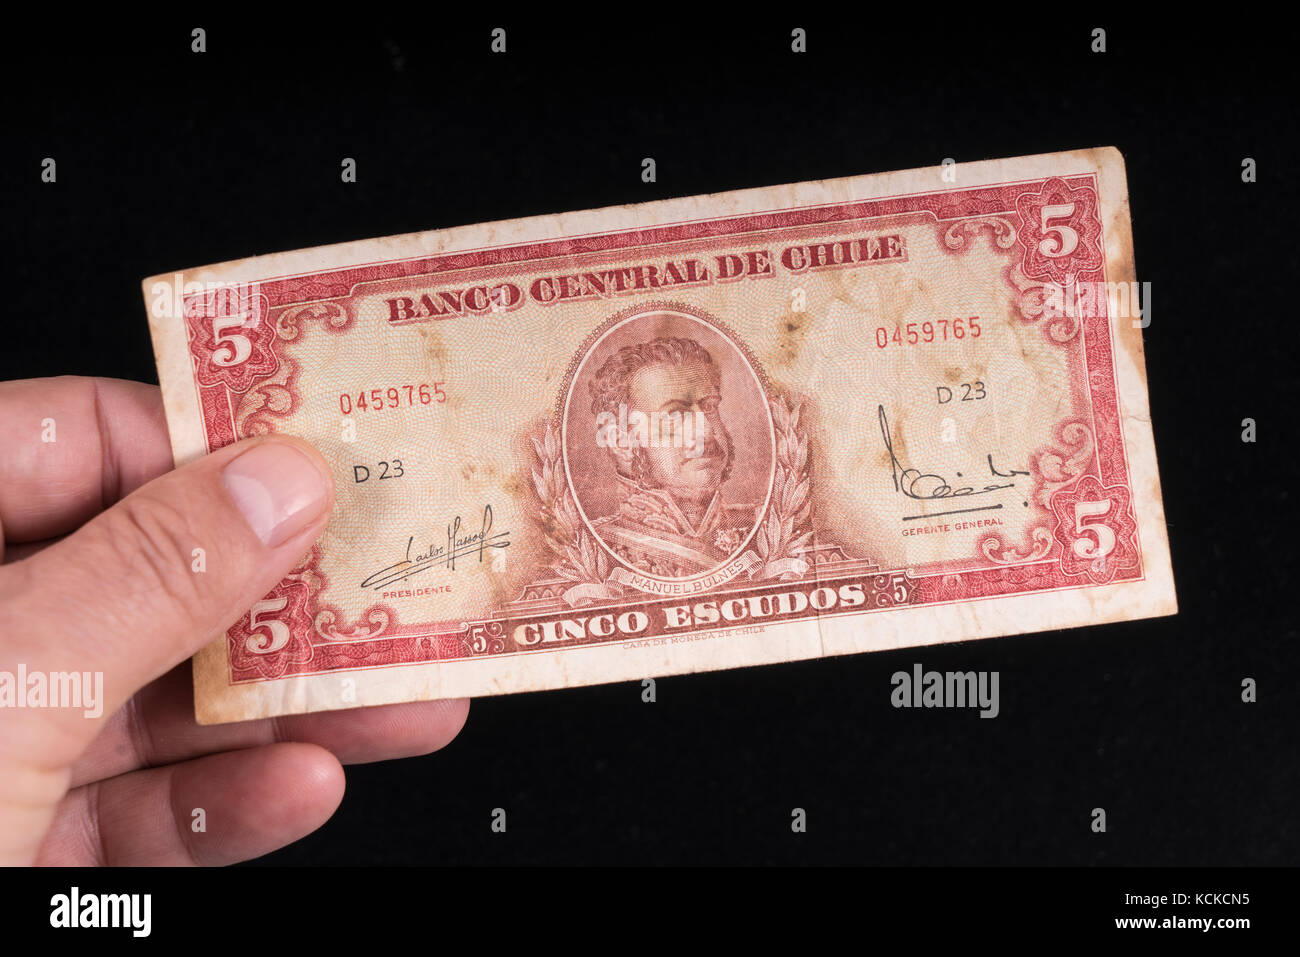 Una vecchia banconota cilena a portata di mano Foto Stock